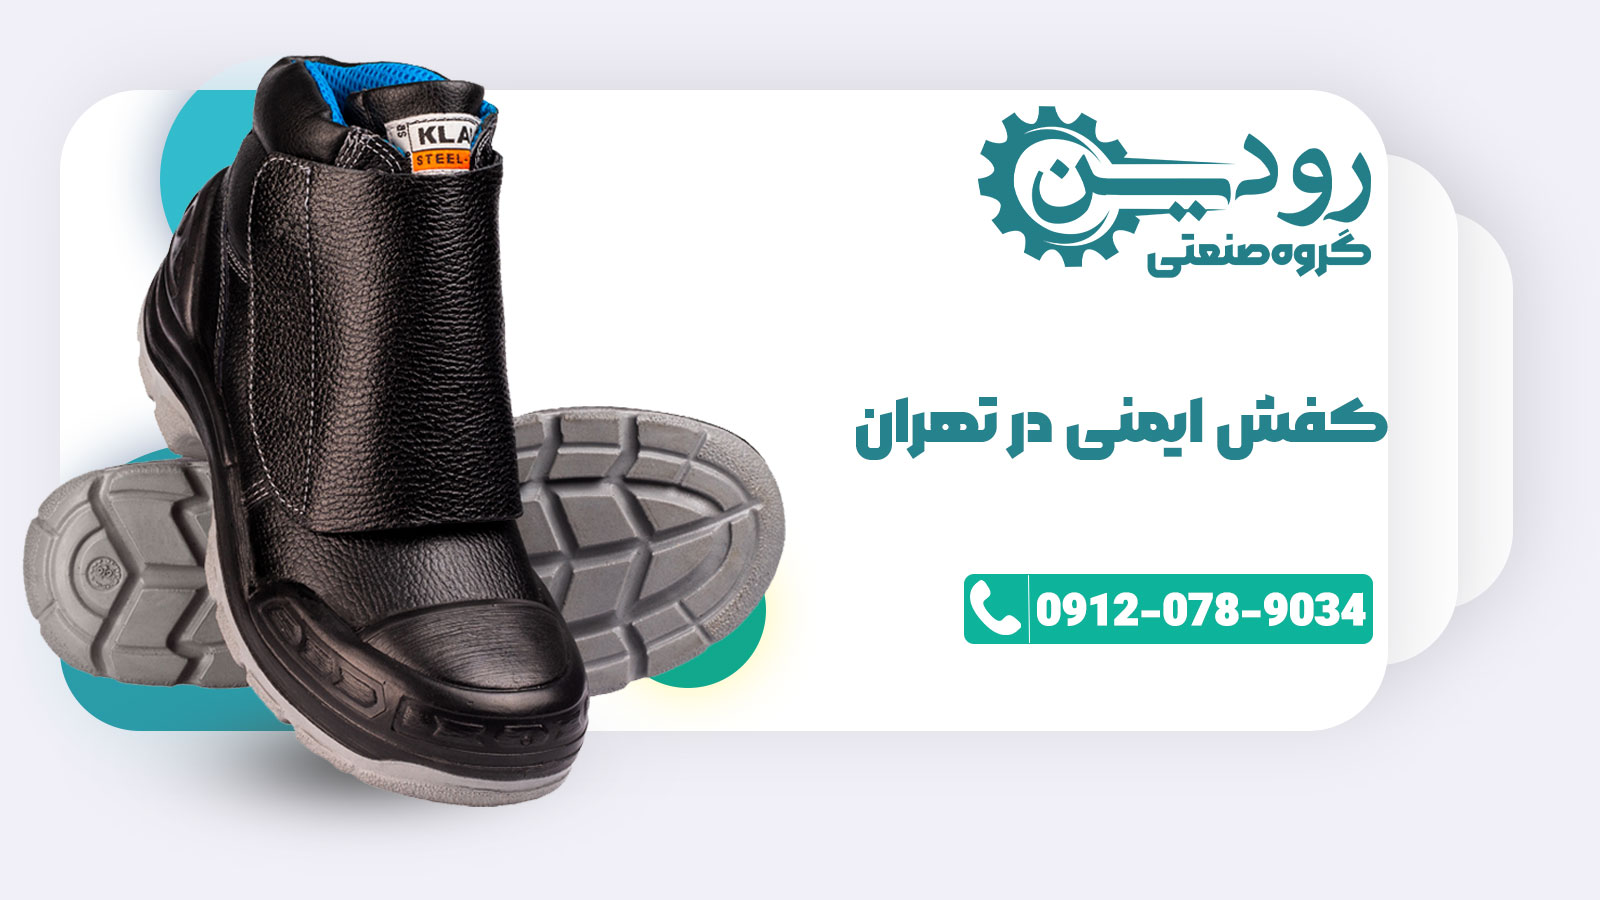 بهترین فروشگاه کفش کار تهران را در مراکز  اینترنتی میتوانید بیابید.